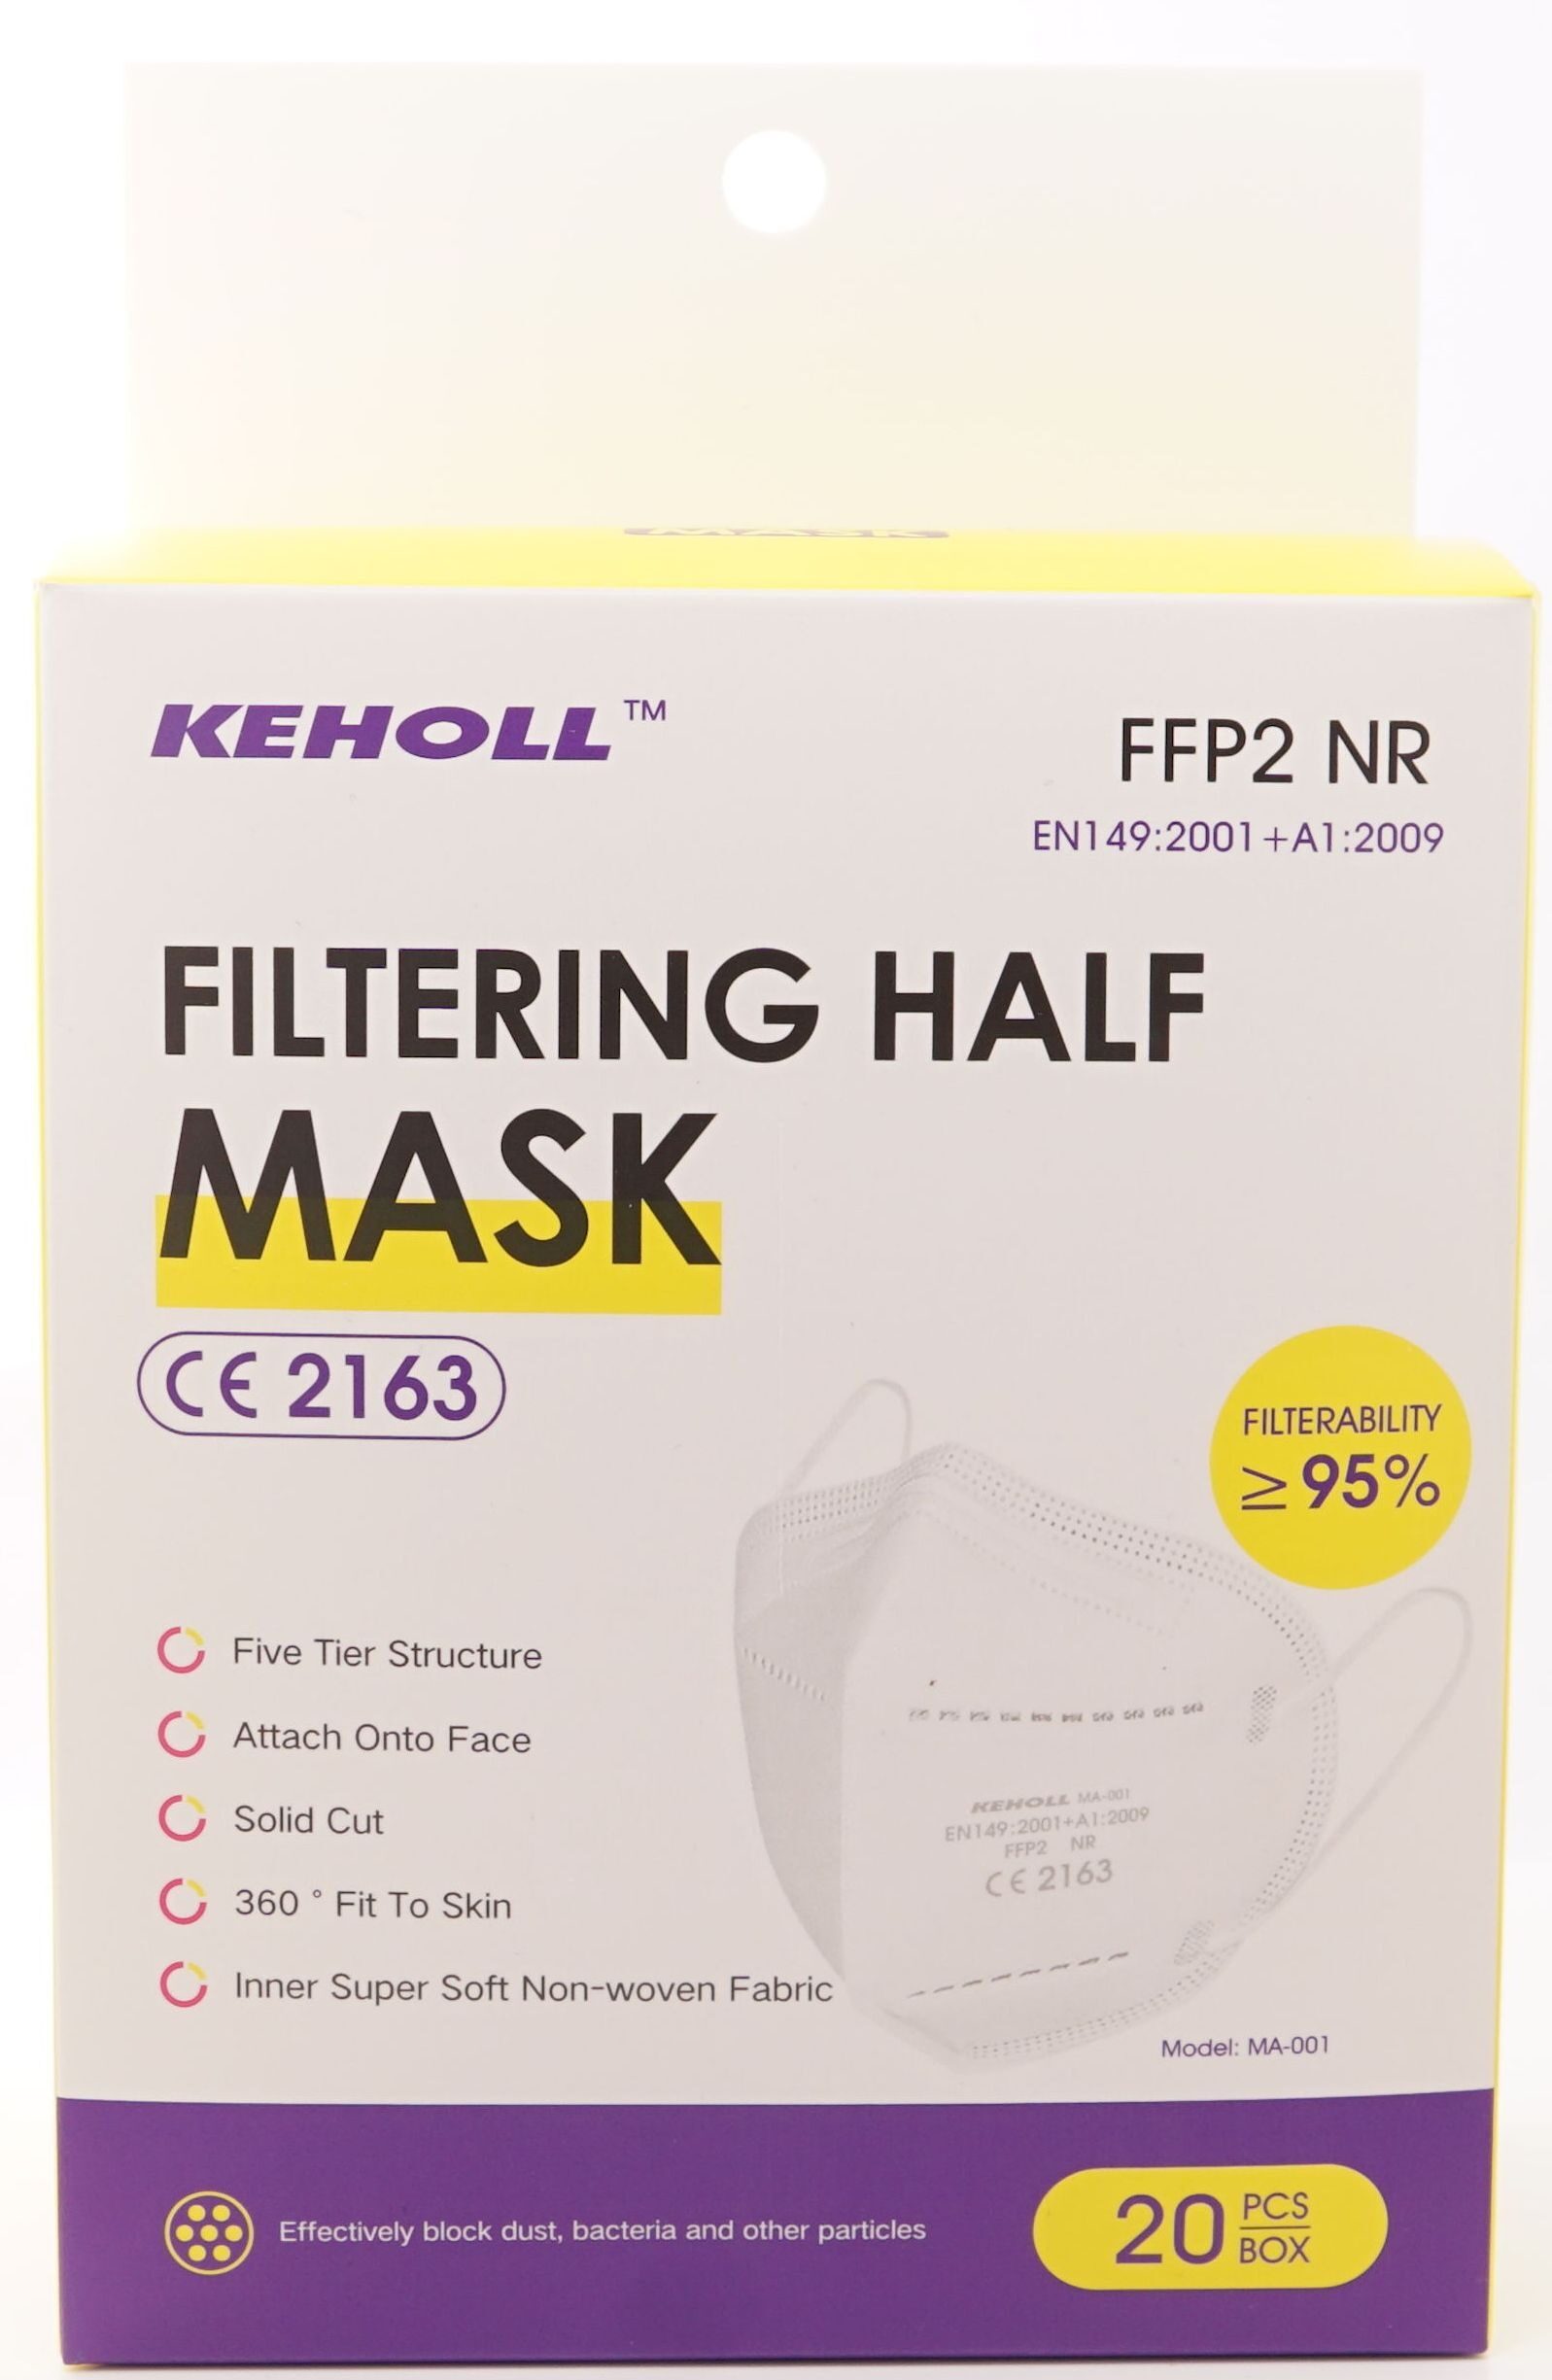 Filtering Half Mask FFP2 - Product - en